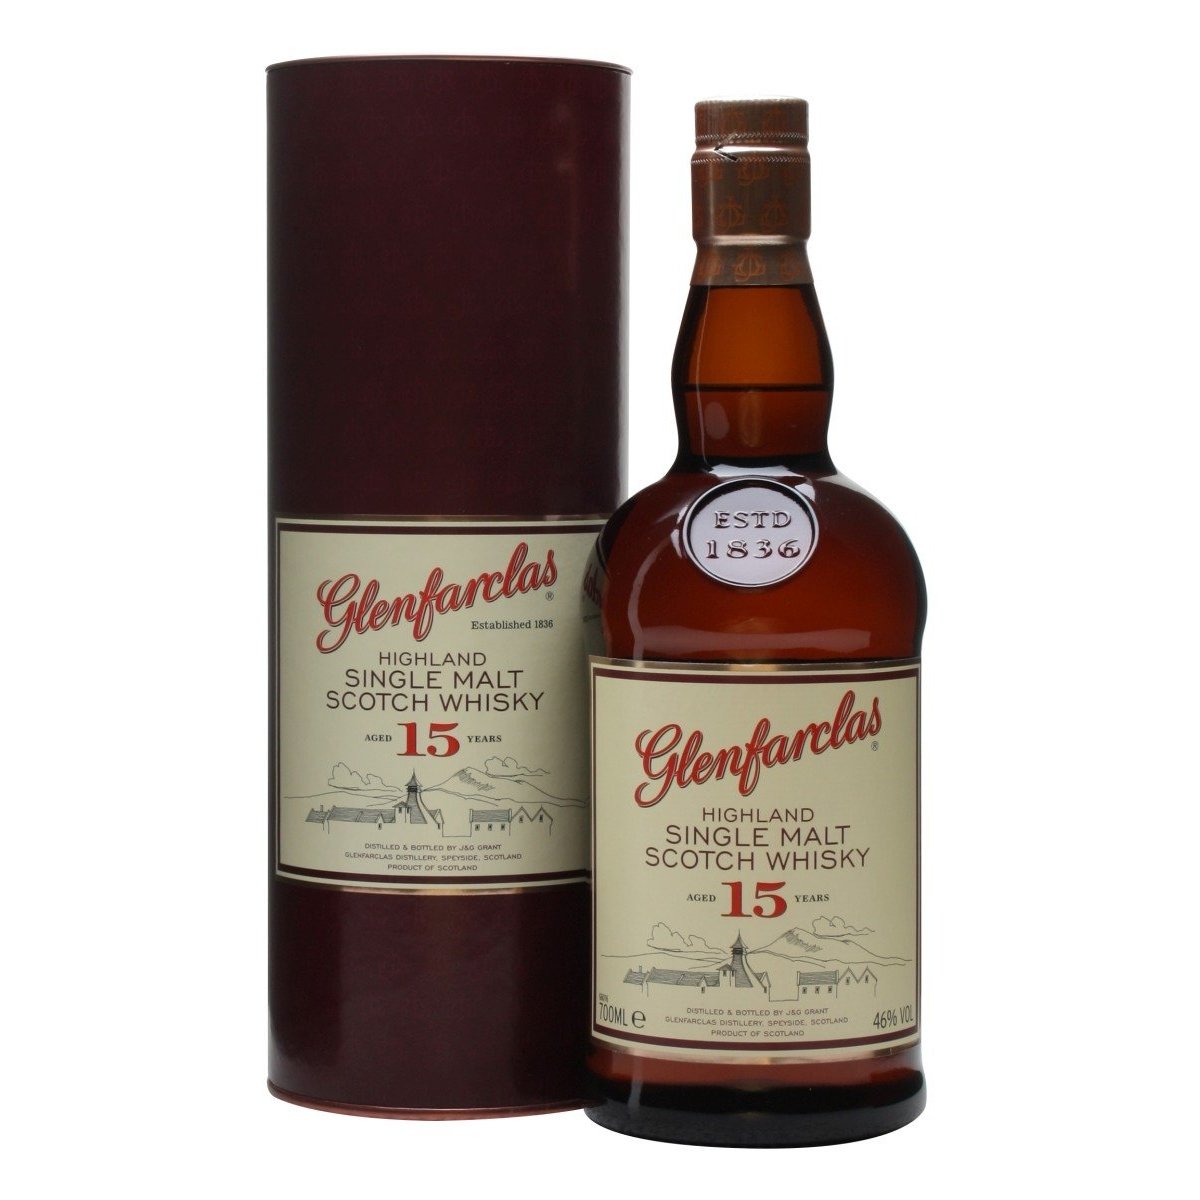 Glenfarclas 15 Years Old Highland Single Malt Scotch Whisky 46% Vol. 0,7l in Giftbox